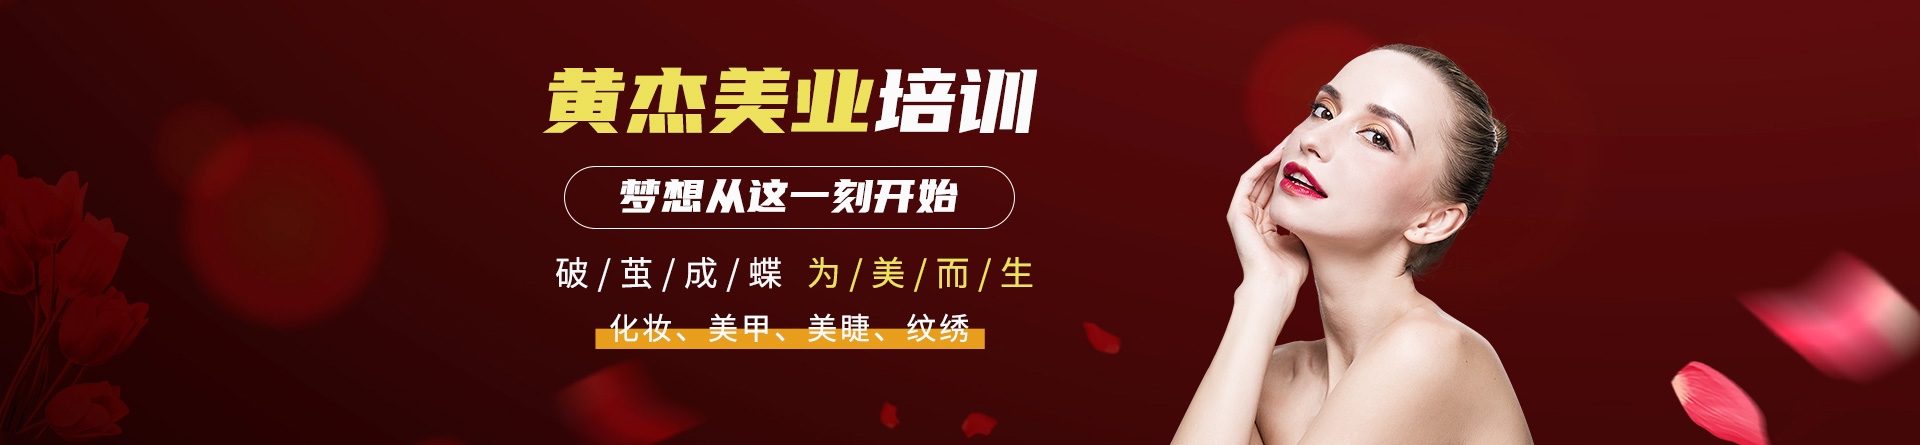 南京黄杰化妆万博网页版登录学校 横幅广告